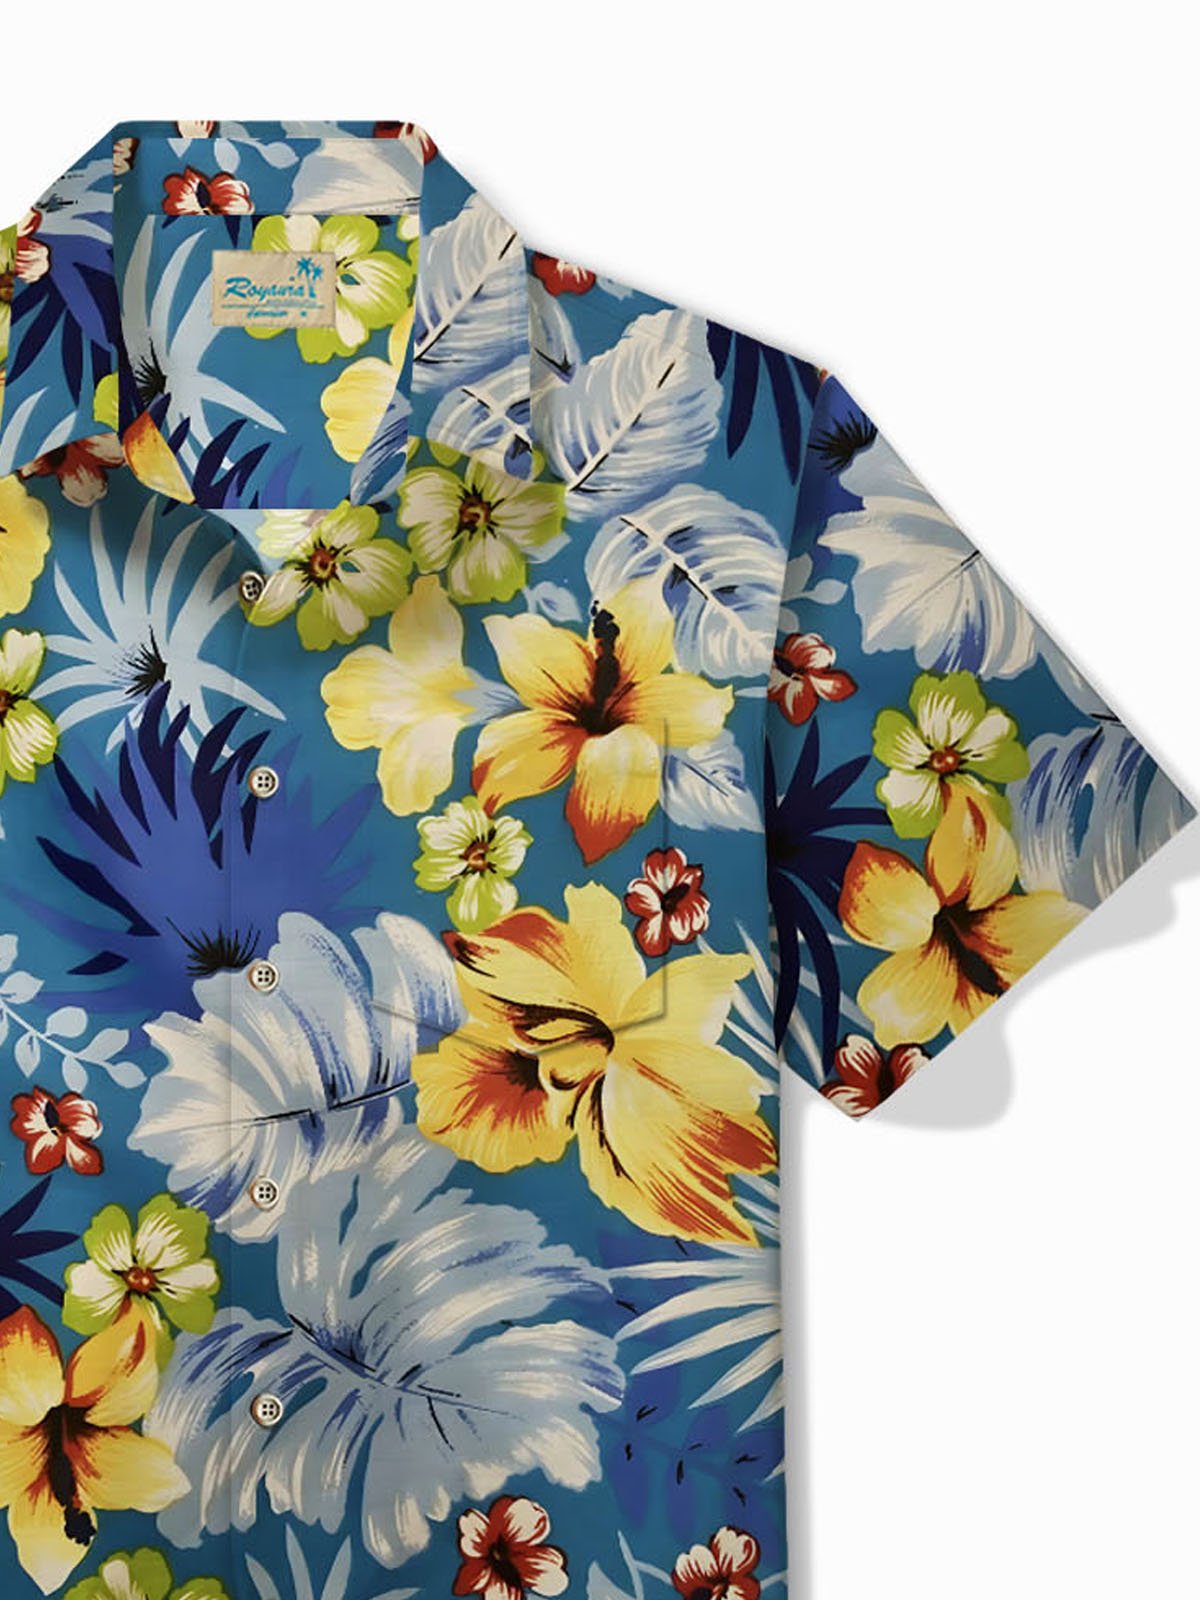 Royaura® Beach Holiday Men's Floral Hawaiian Shirt Quick Drying Easy Care Camp Pocket Shirt Big Tall